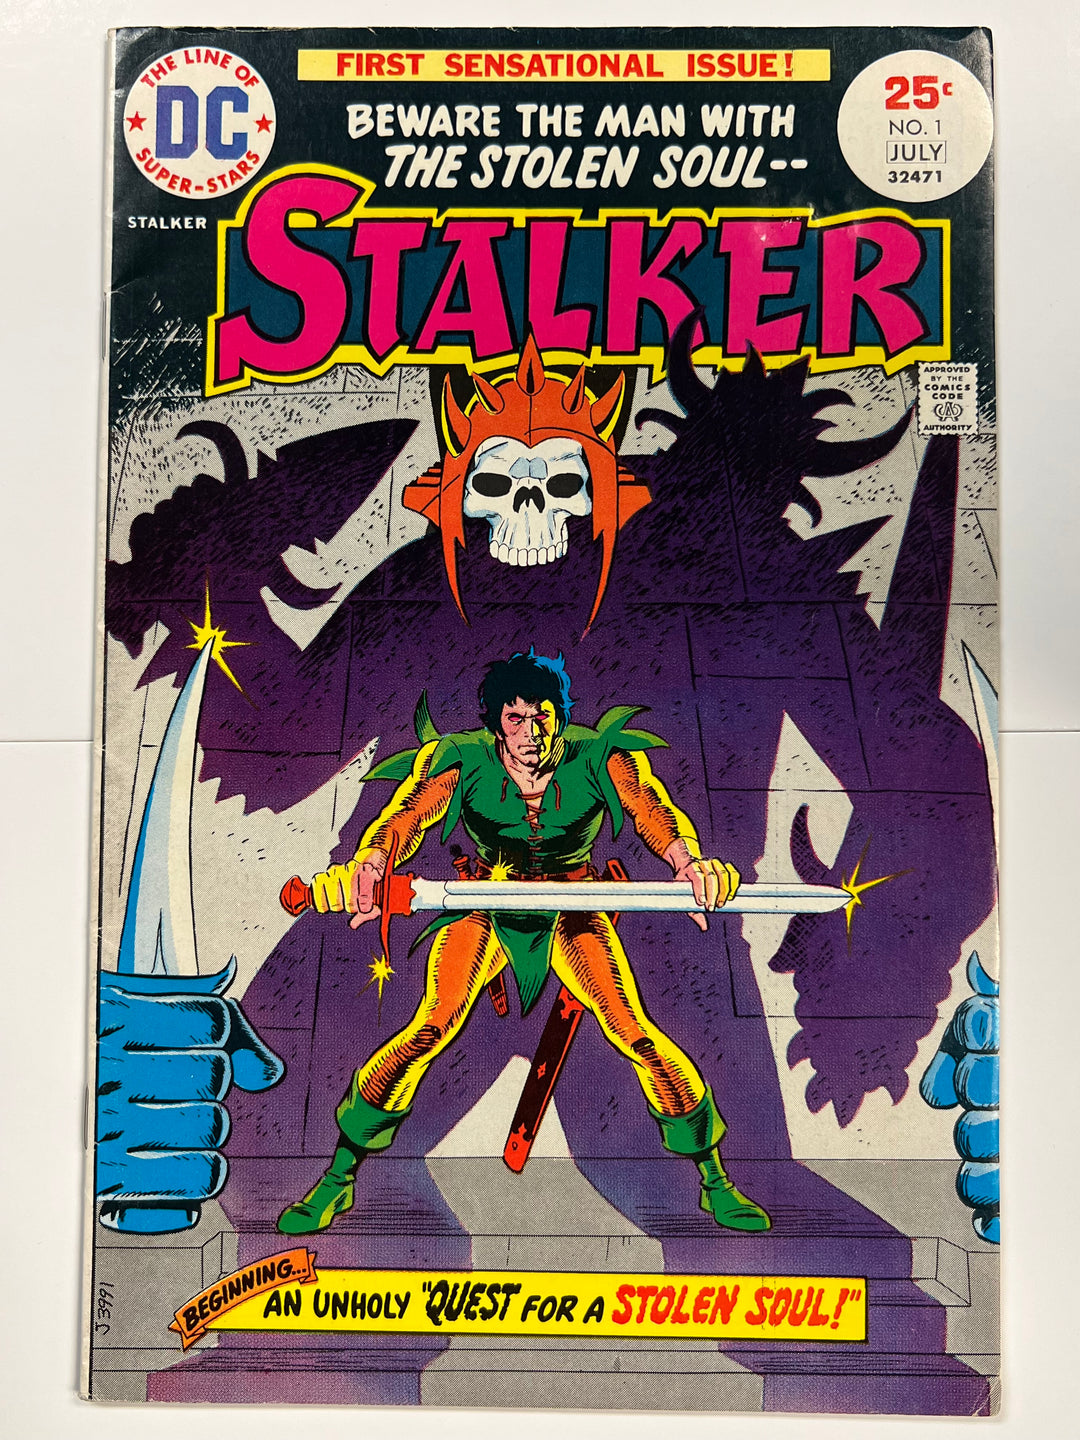 Stalker #1 DC 1975 F